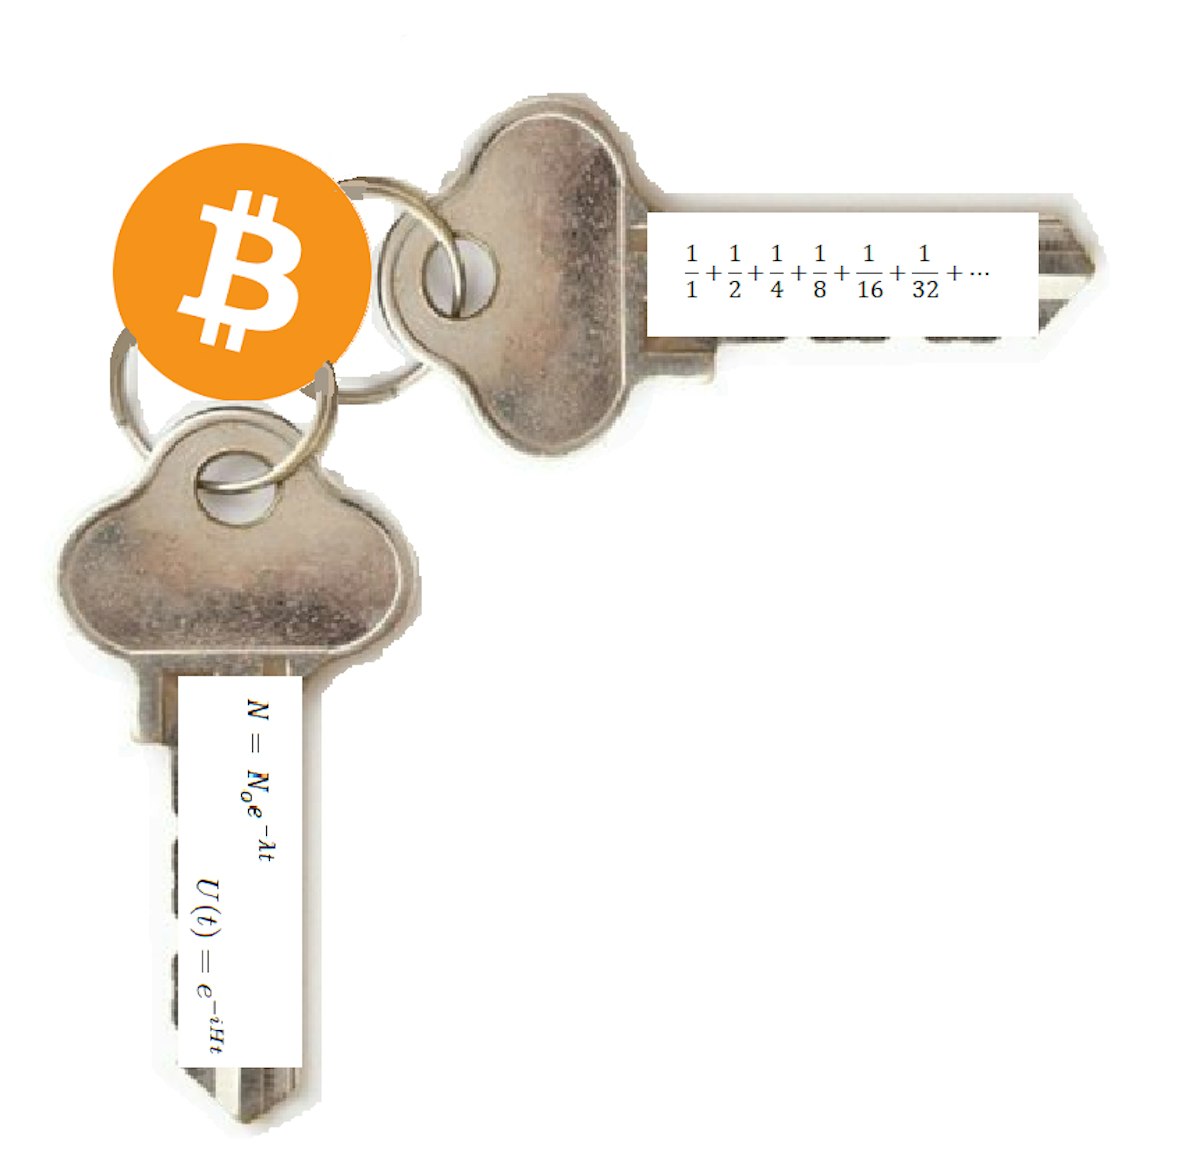 featured image - Die mathematischen Geheimnisse der Bitcoin-Halbierung